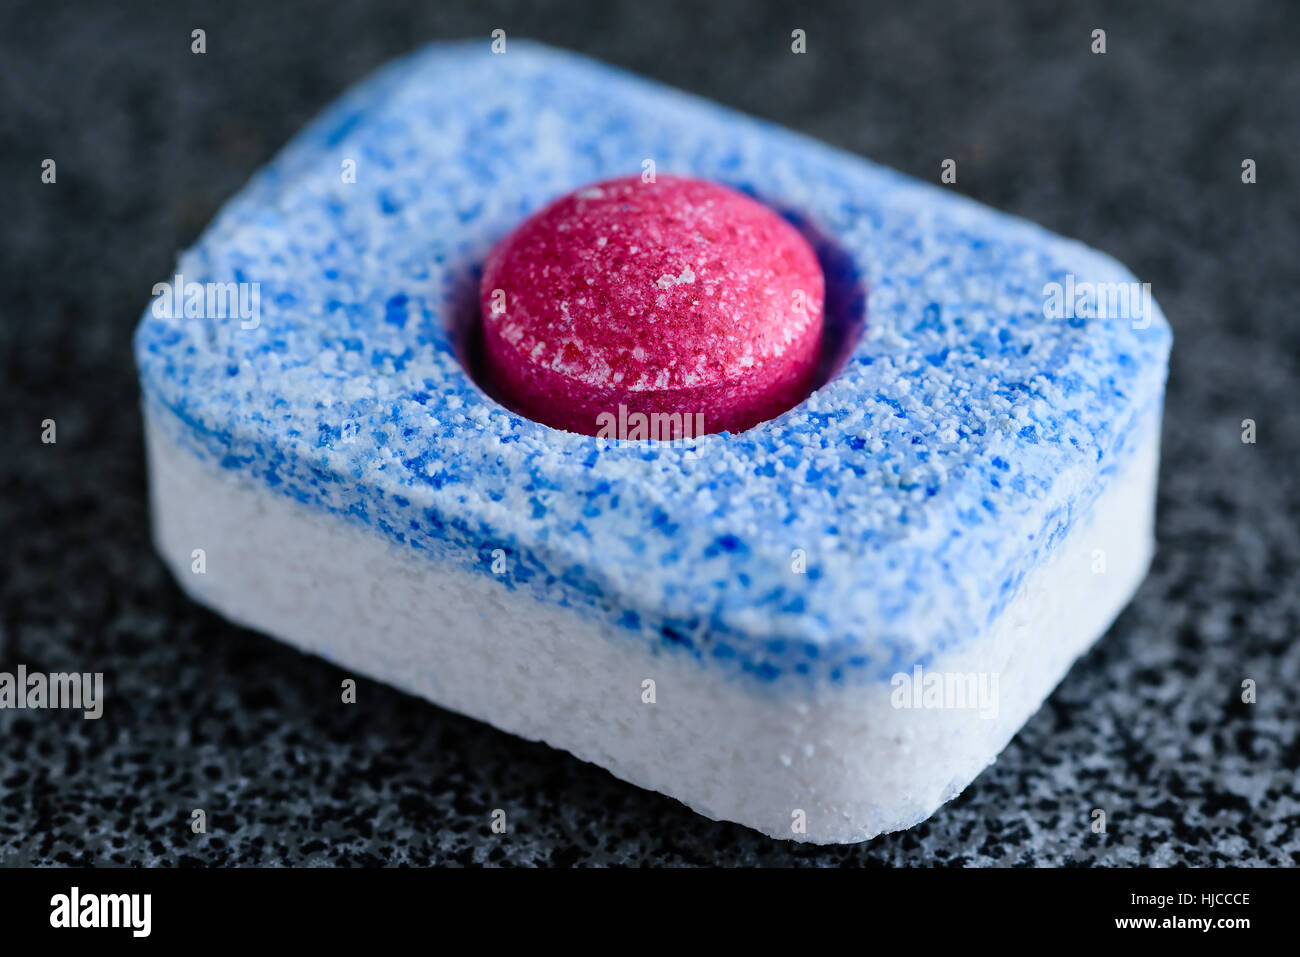 Tout-en-un tablette lave-vaisselle avec une boule rouge dans le centre. Banque D'Images